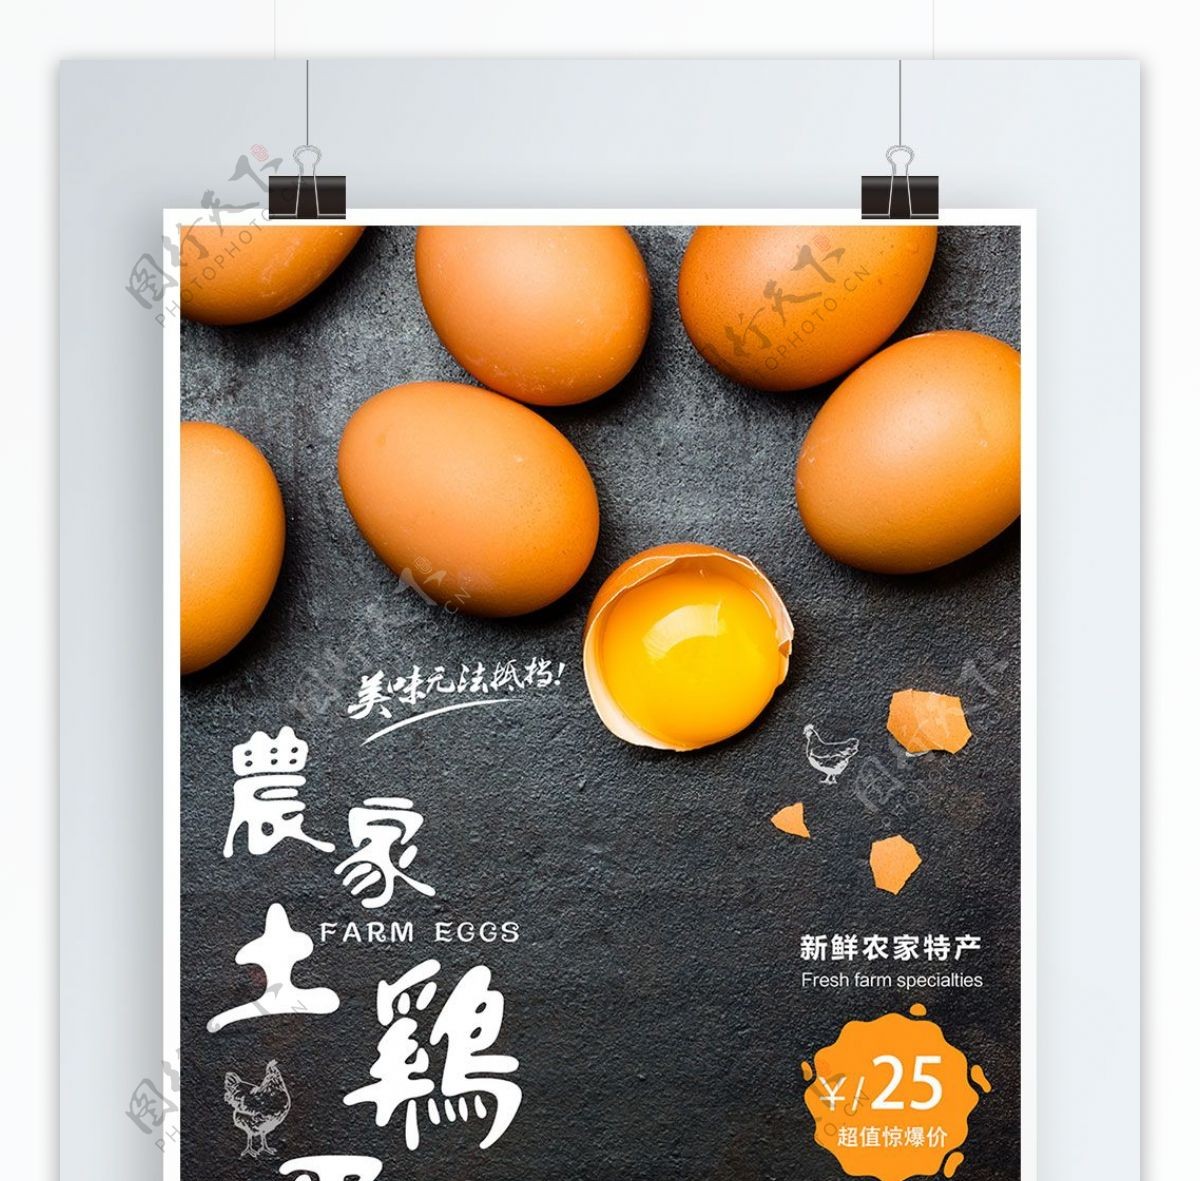 黑色大气美食土鸡蛋商业海报设计